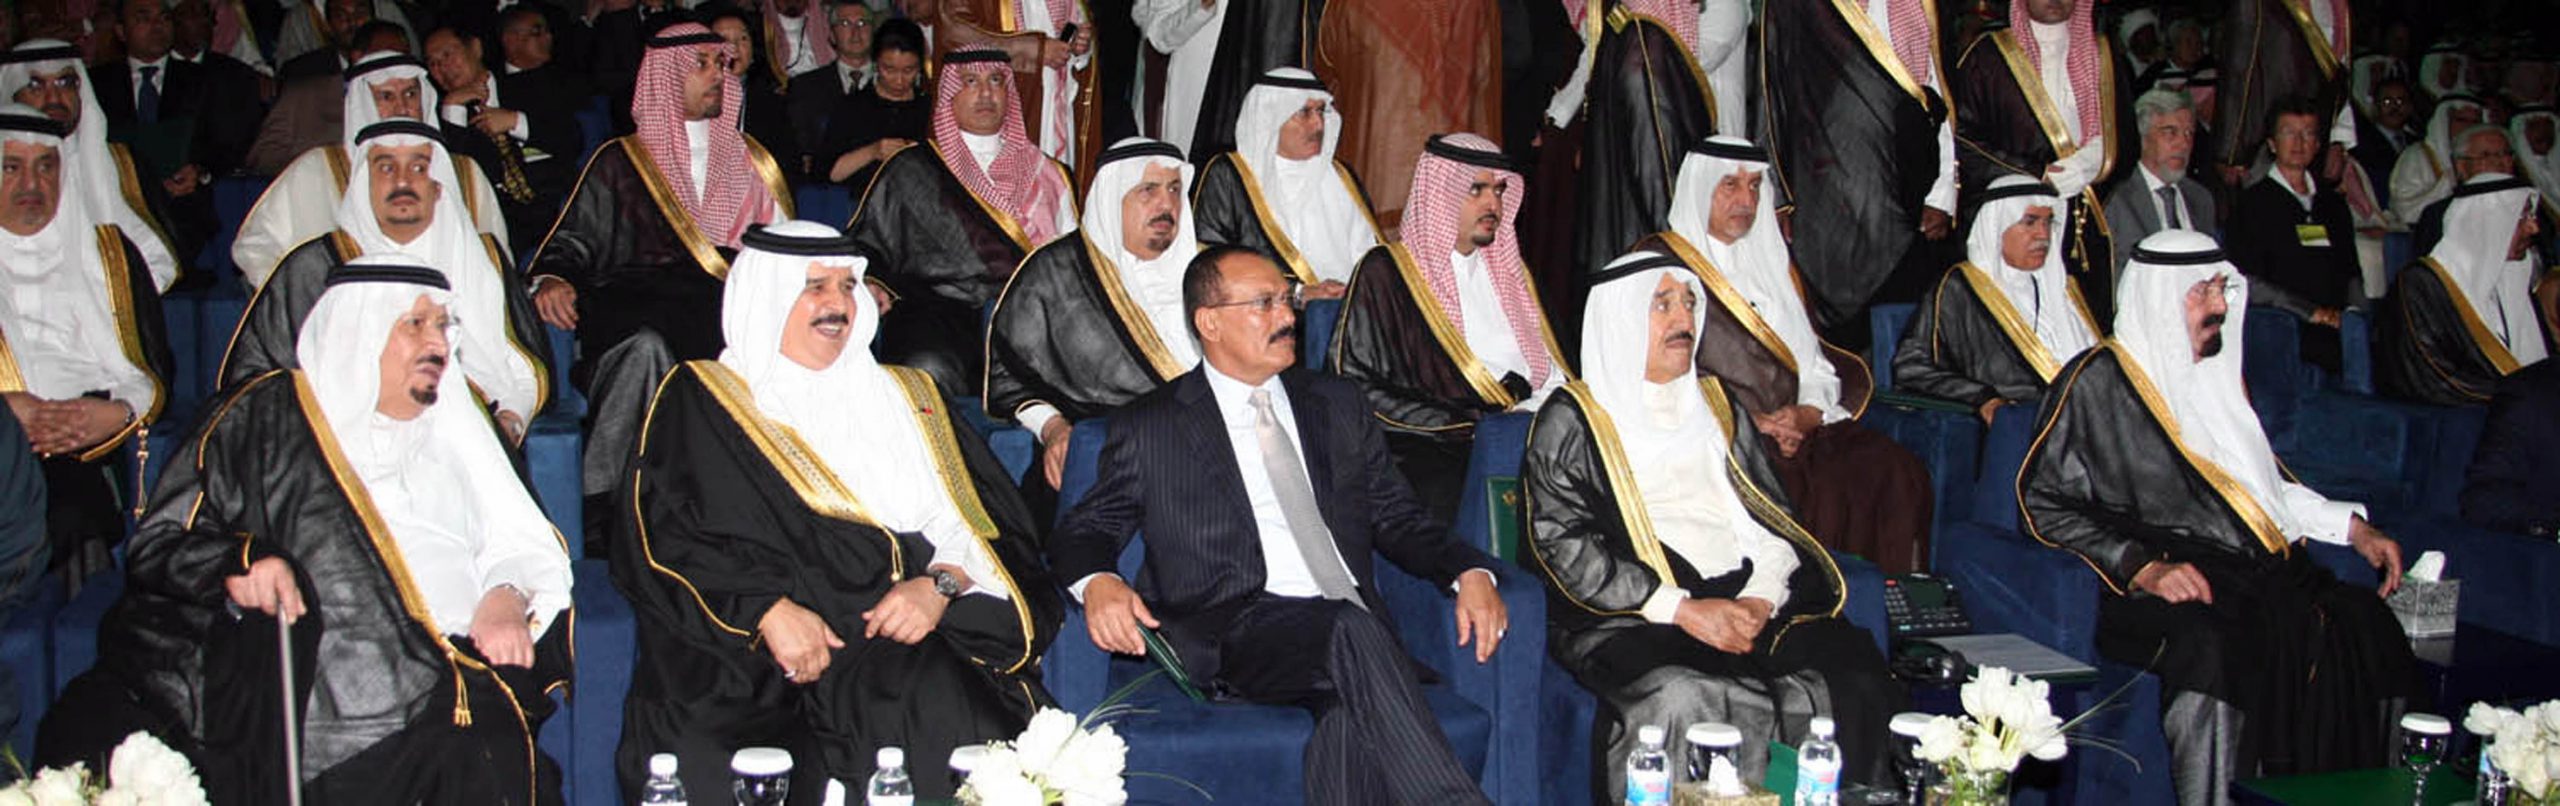 جدة: يشارك فخامته في حفل افتتاح جامعة الملك عبدالله للعلوم والتقنية في المملكة العربية السعودية، 23-09-2009